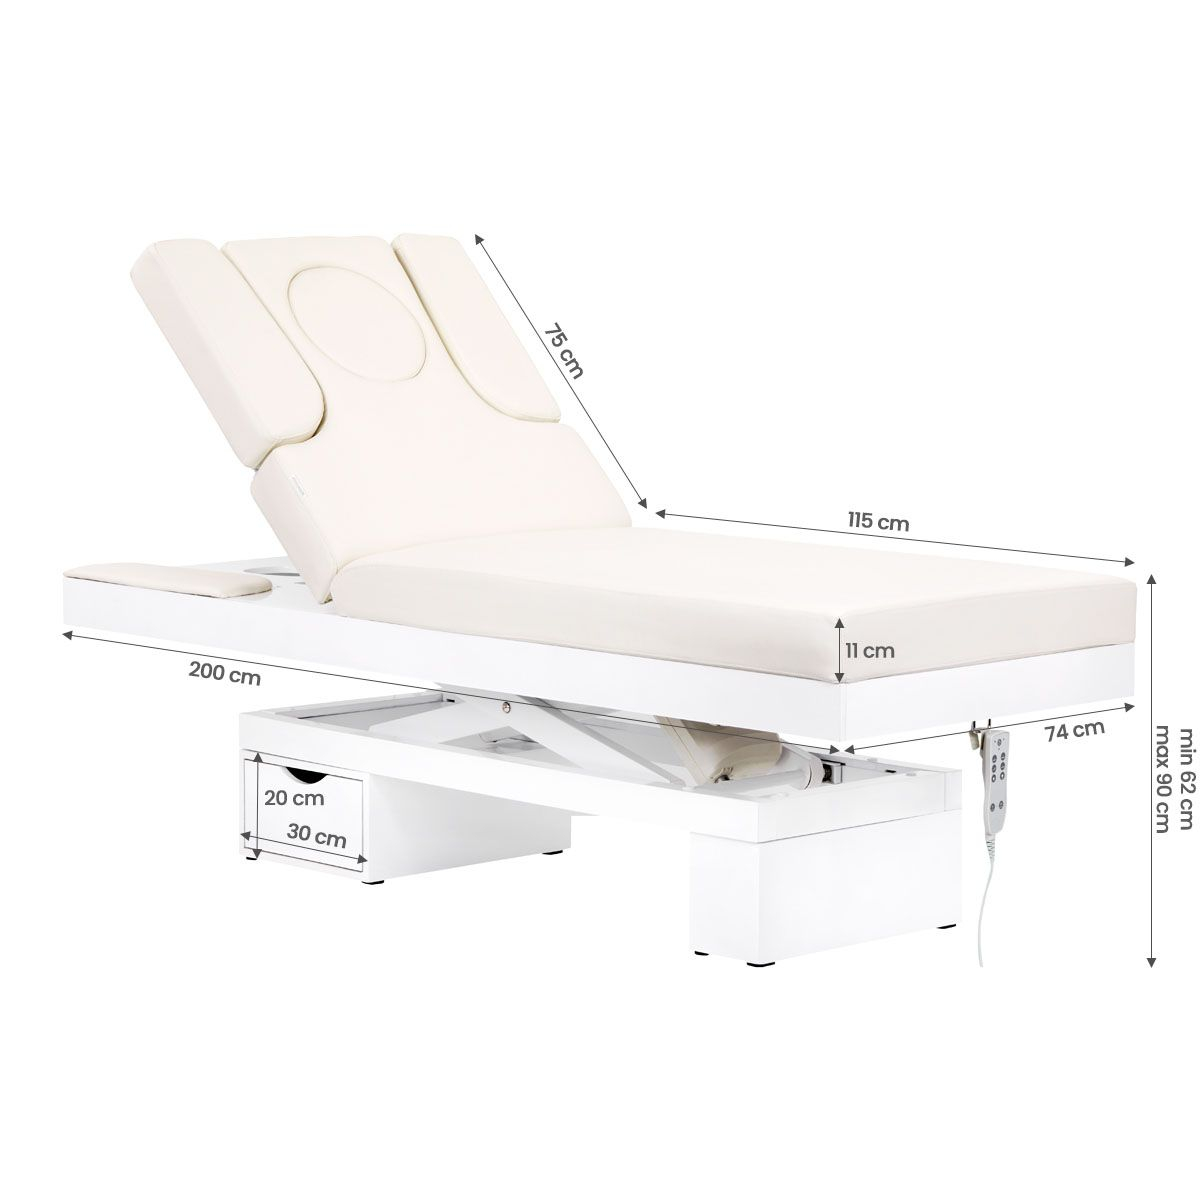 Elektrisk behandlingssäng / massagebänk SPA AZZURRO 815B vit, 2-motor, med LED belysning och uppvärmning